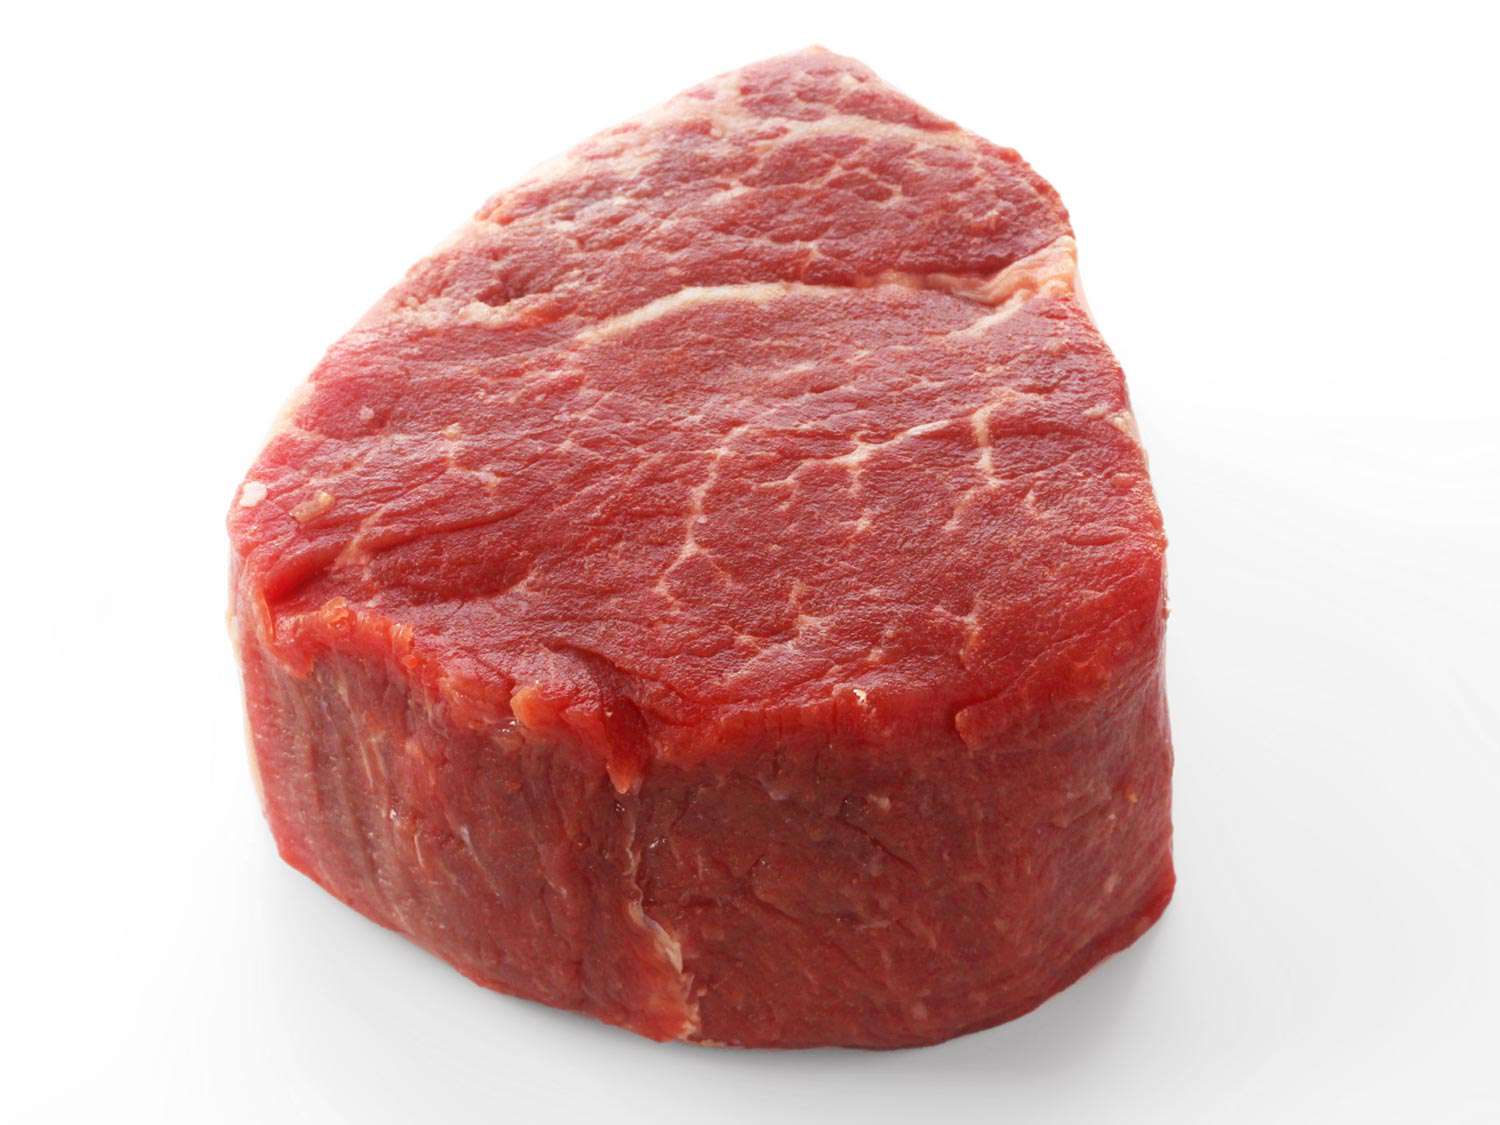 A raw tenderloin steak